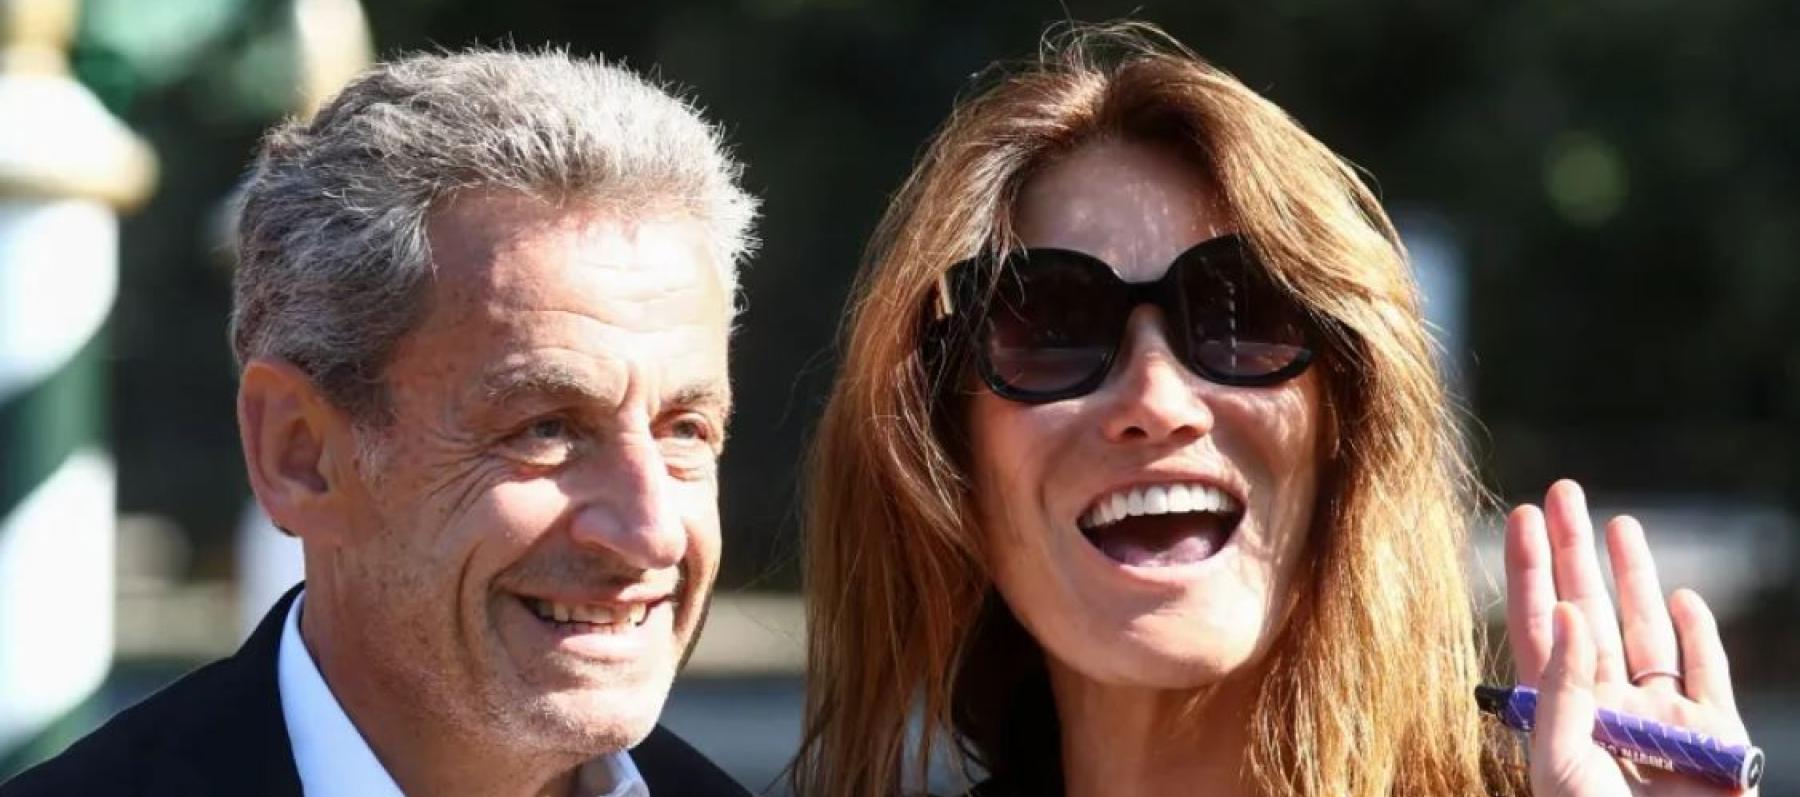 نيكولا ساركوزي وزوجته كارلا بروني - صورة من غوغل